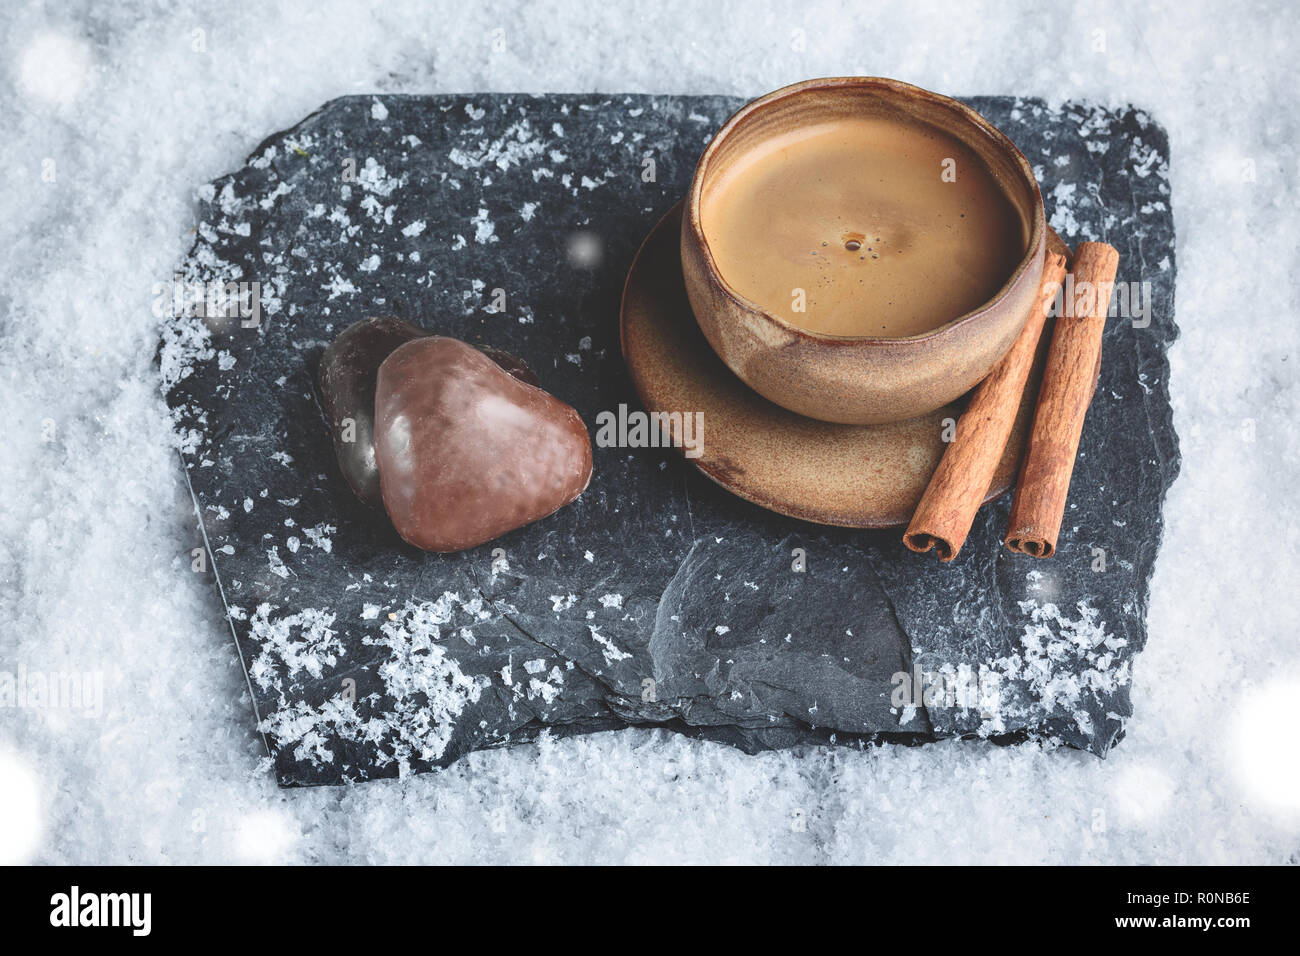 Taza de café con forma de corazón y decoración de invierno sobre la nieve de jengibre Foto de stock